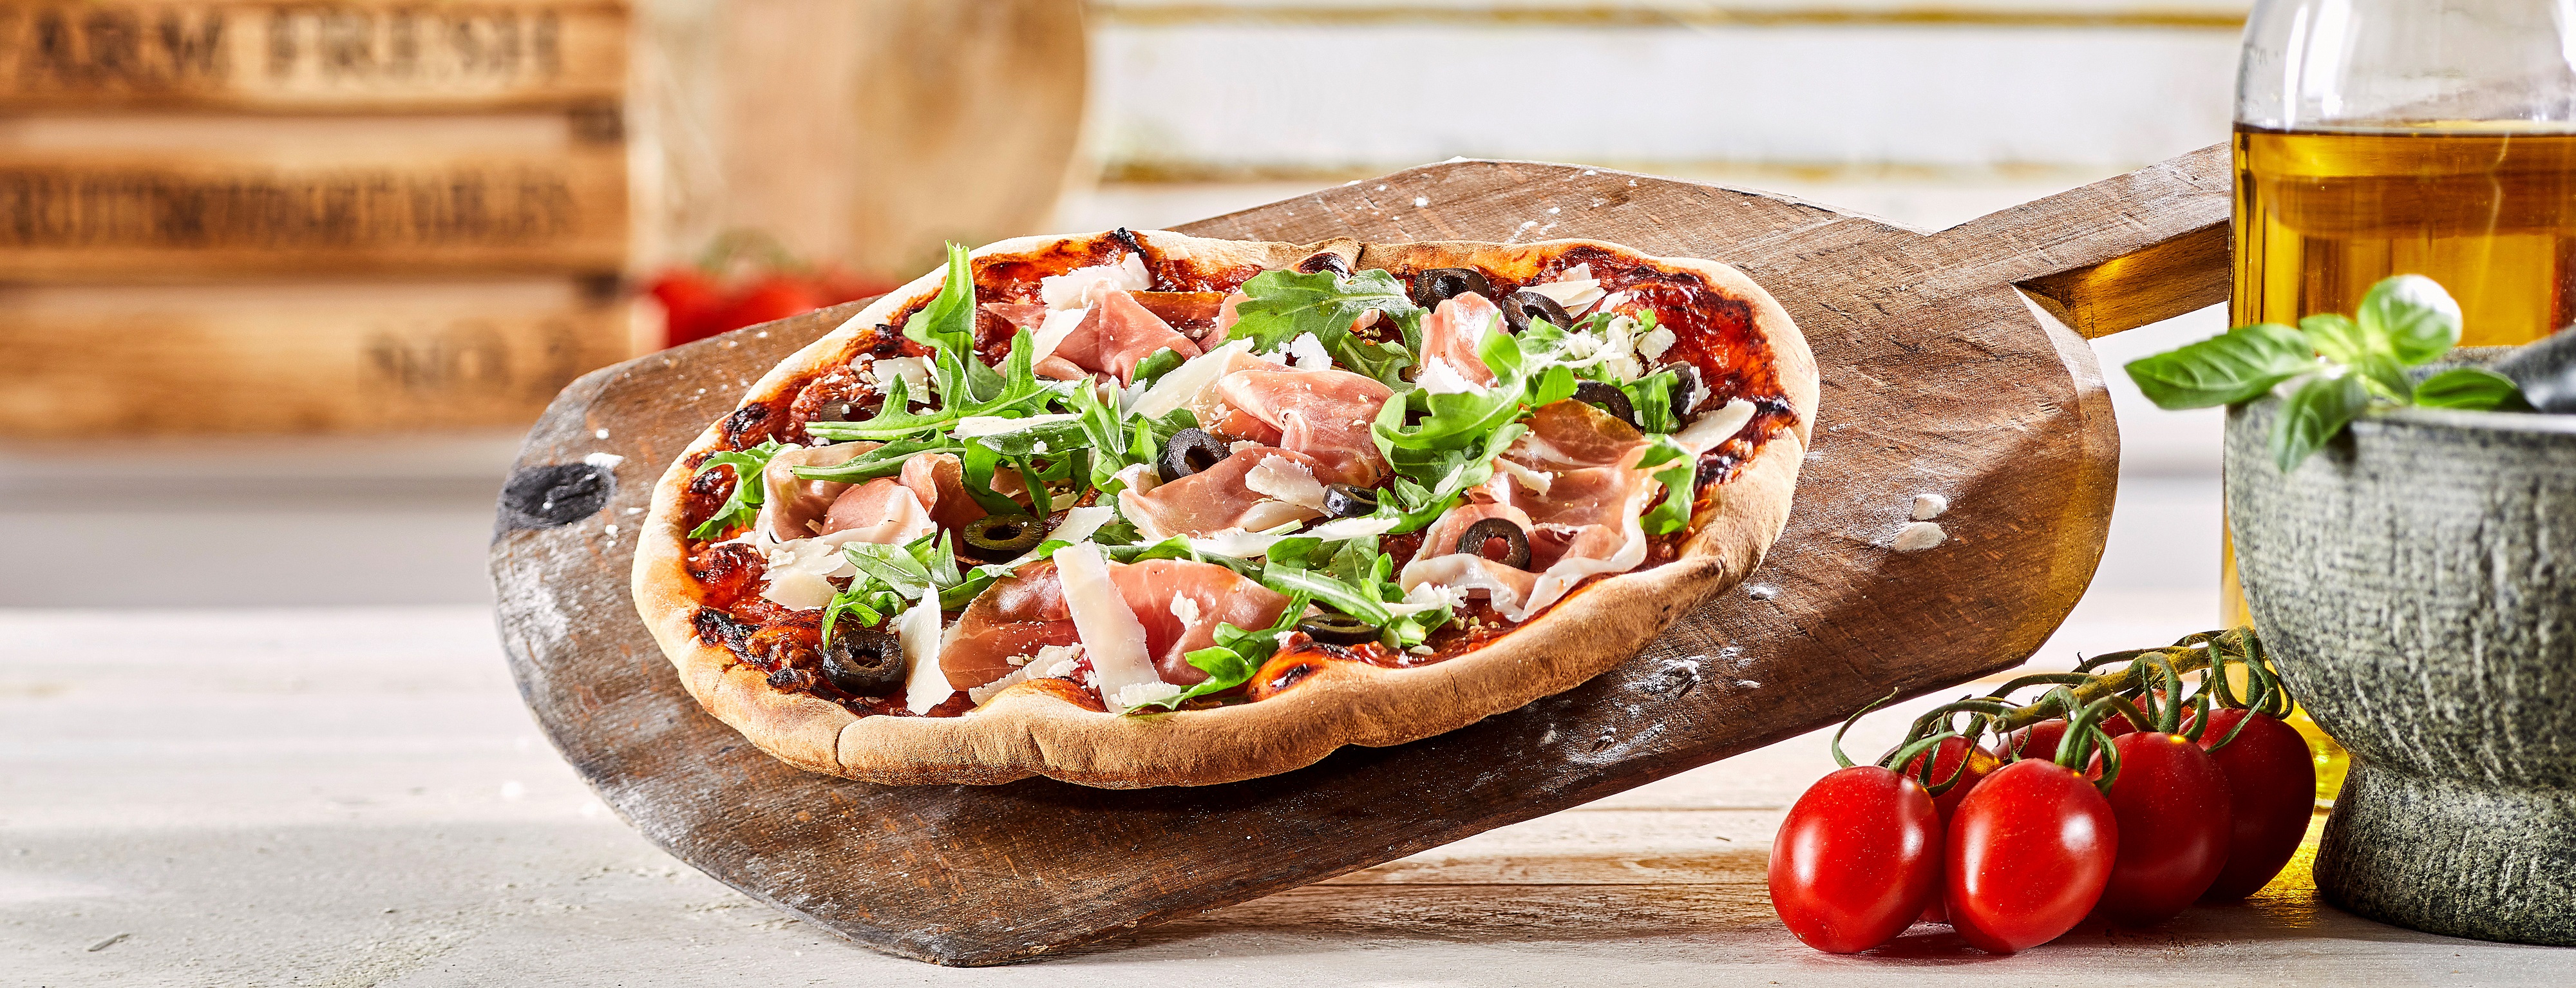 La pizza est l’un des plats les plus consommés au monde : d’où lui vient cette popularité ? © Exclusive-design, Adobe Stock